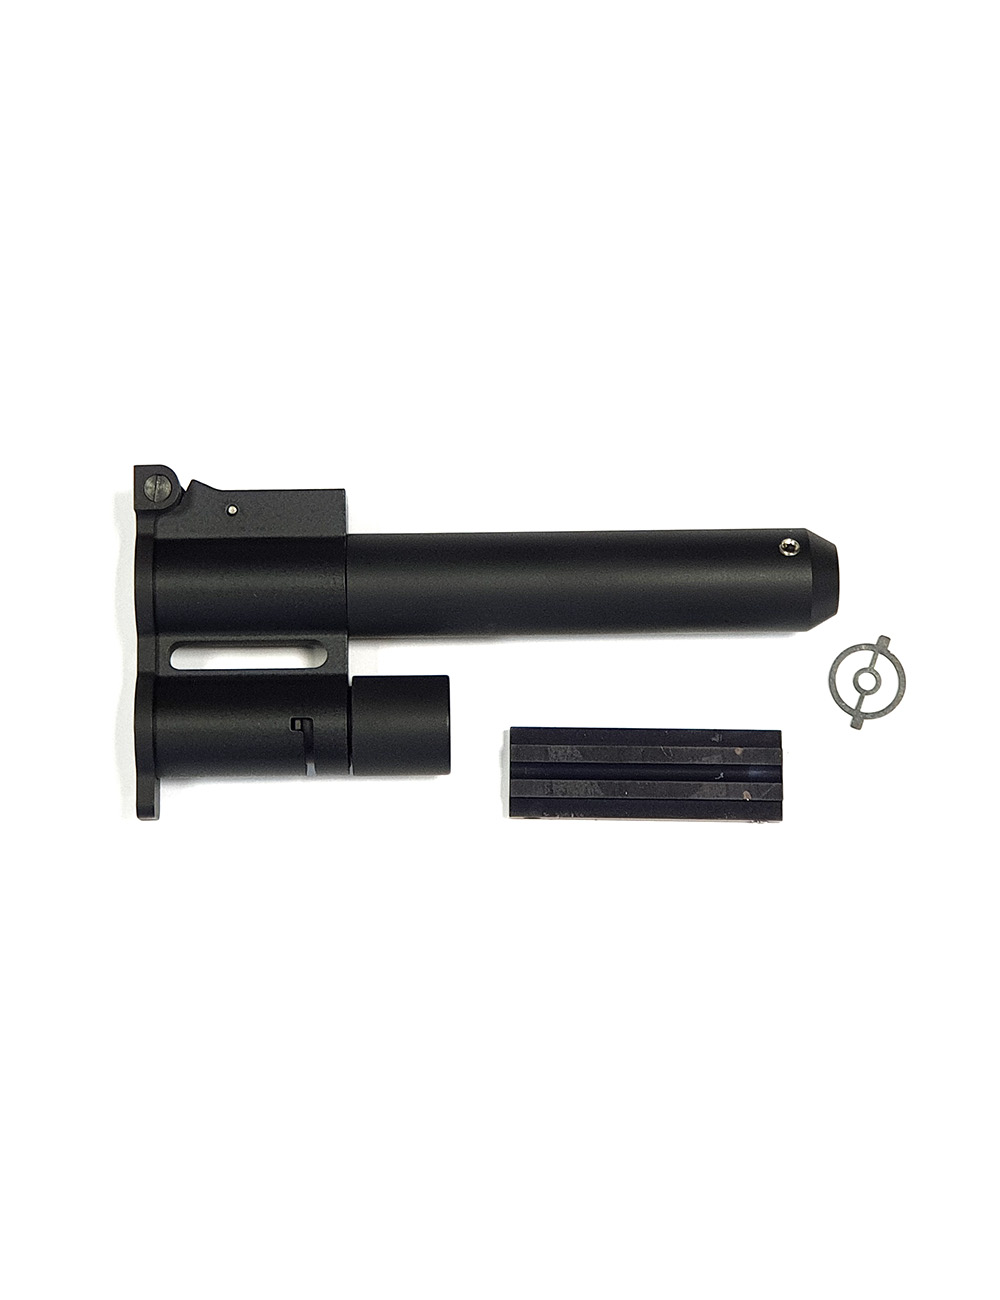 Намушник с удлинителем ствола для винтовки МР61 биатлон Артикул: 34602051810